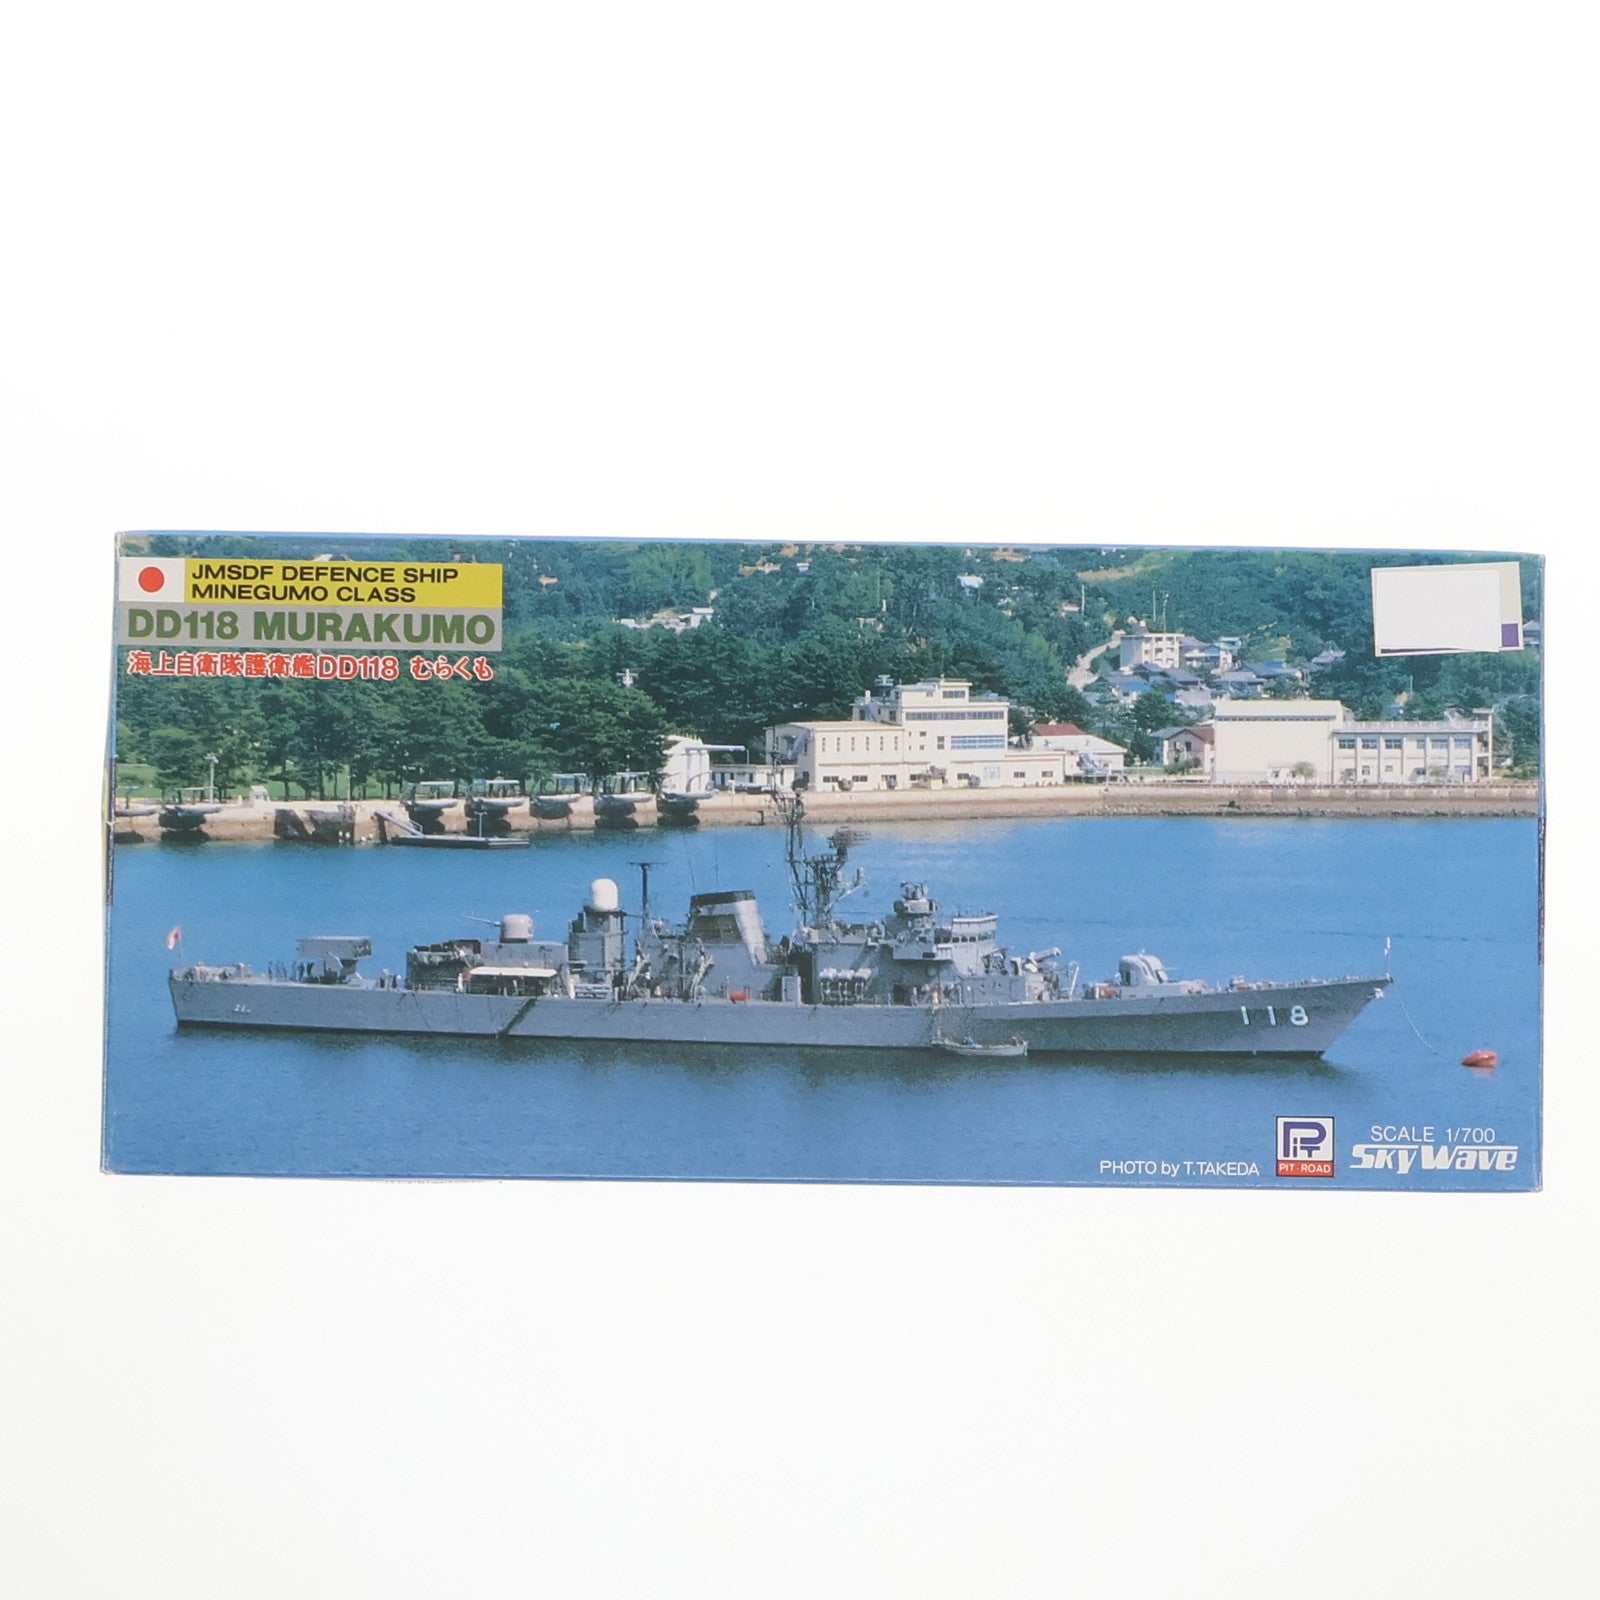 【中古即納】[PTM]スカイウェーブシリーズ 1/700 海上自衛隊護衛艦 DD118 むらくも プラモデル(SP-3) ピットロード(19991231)